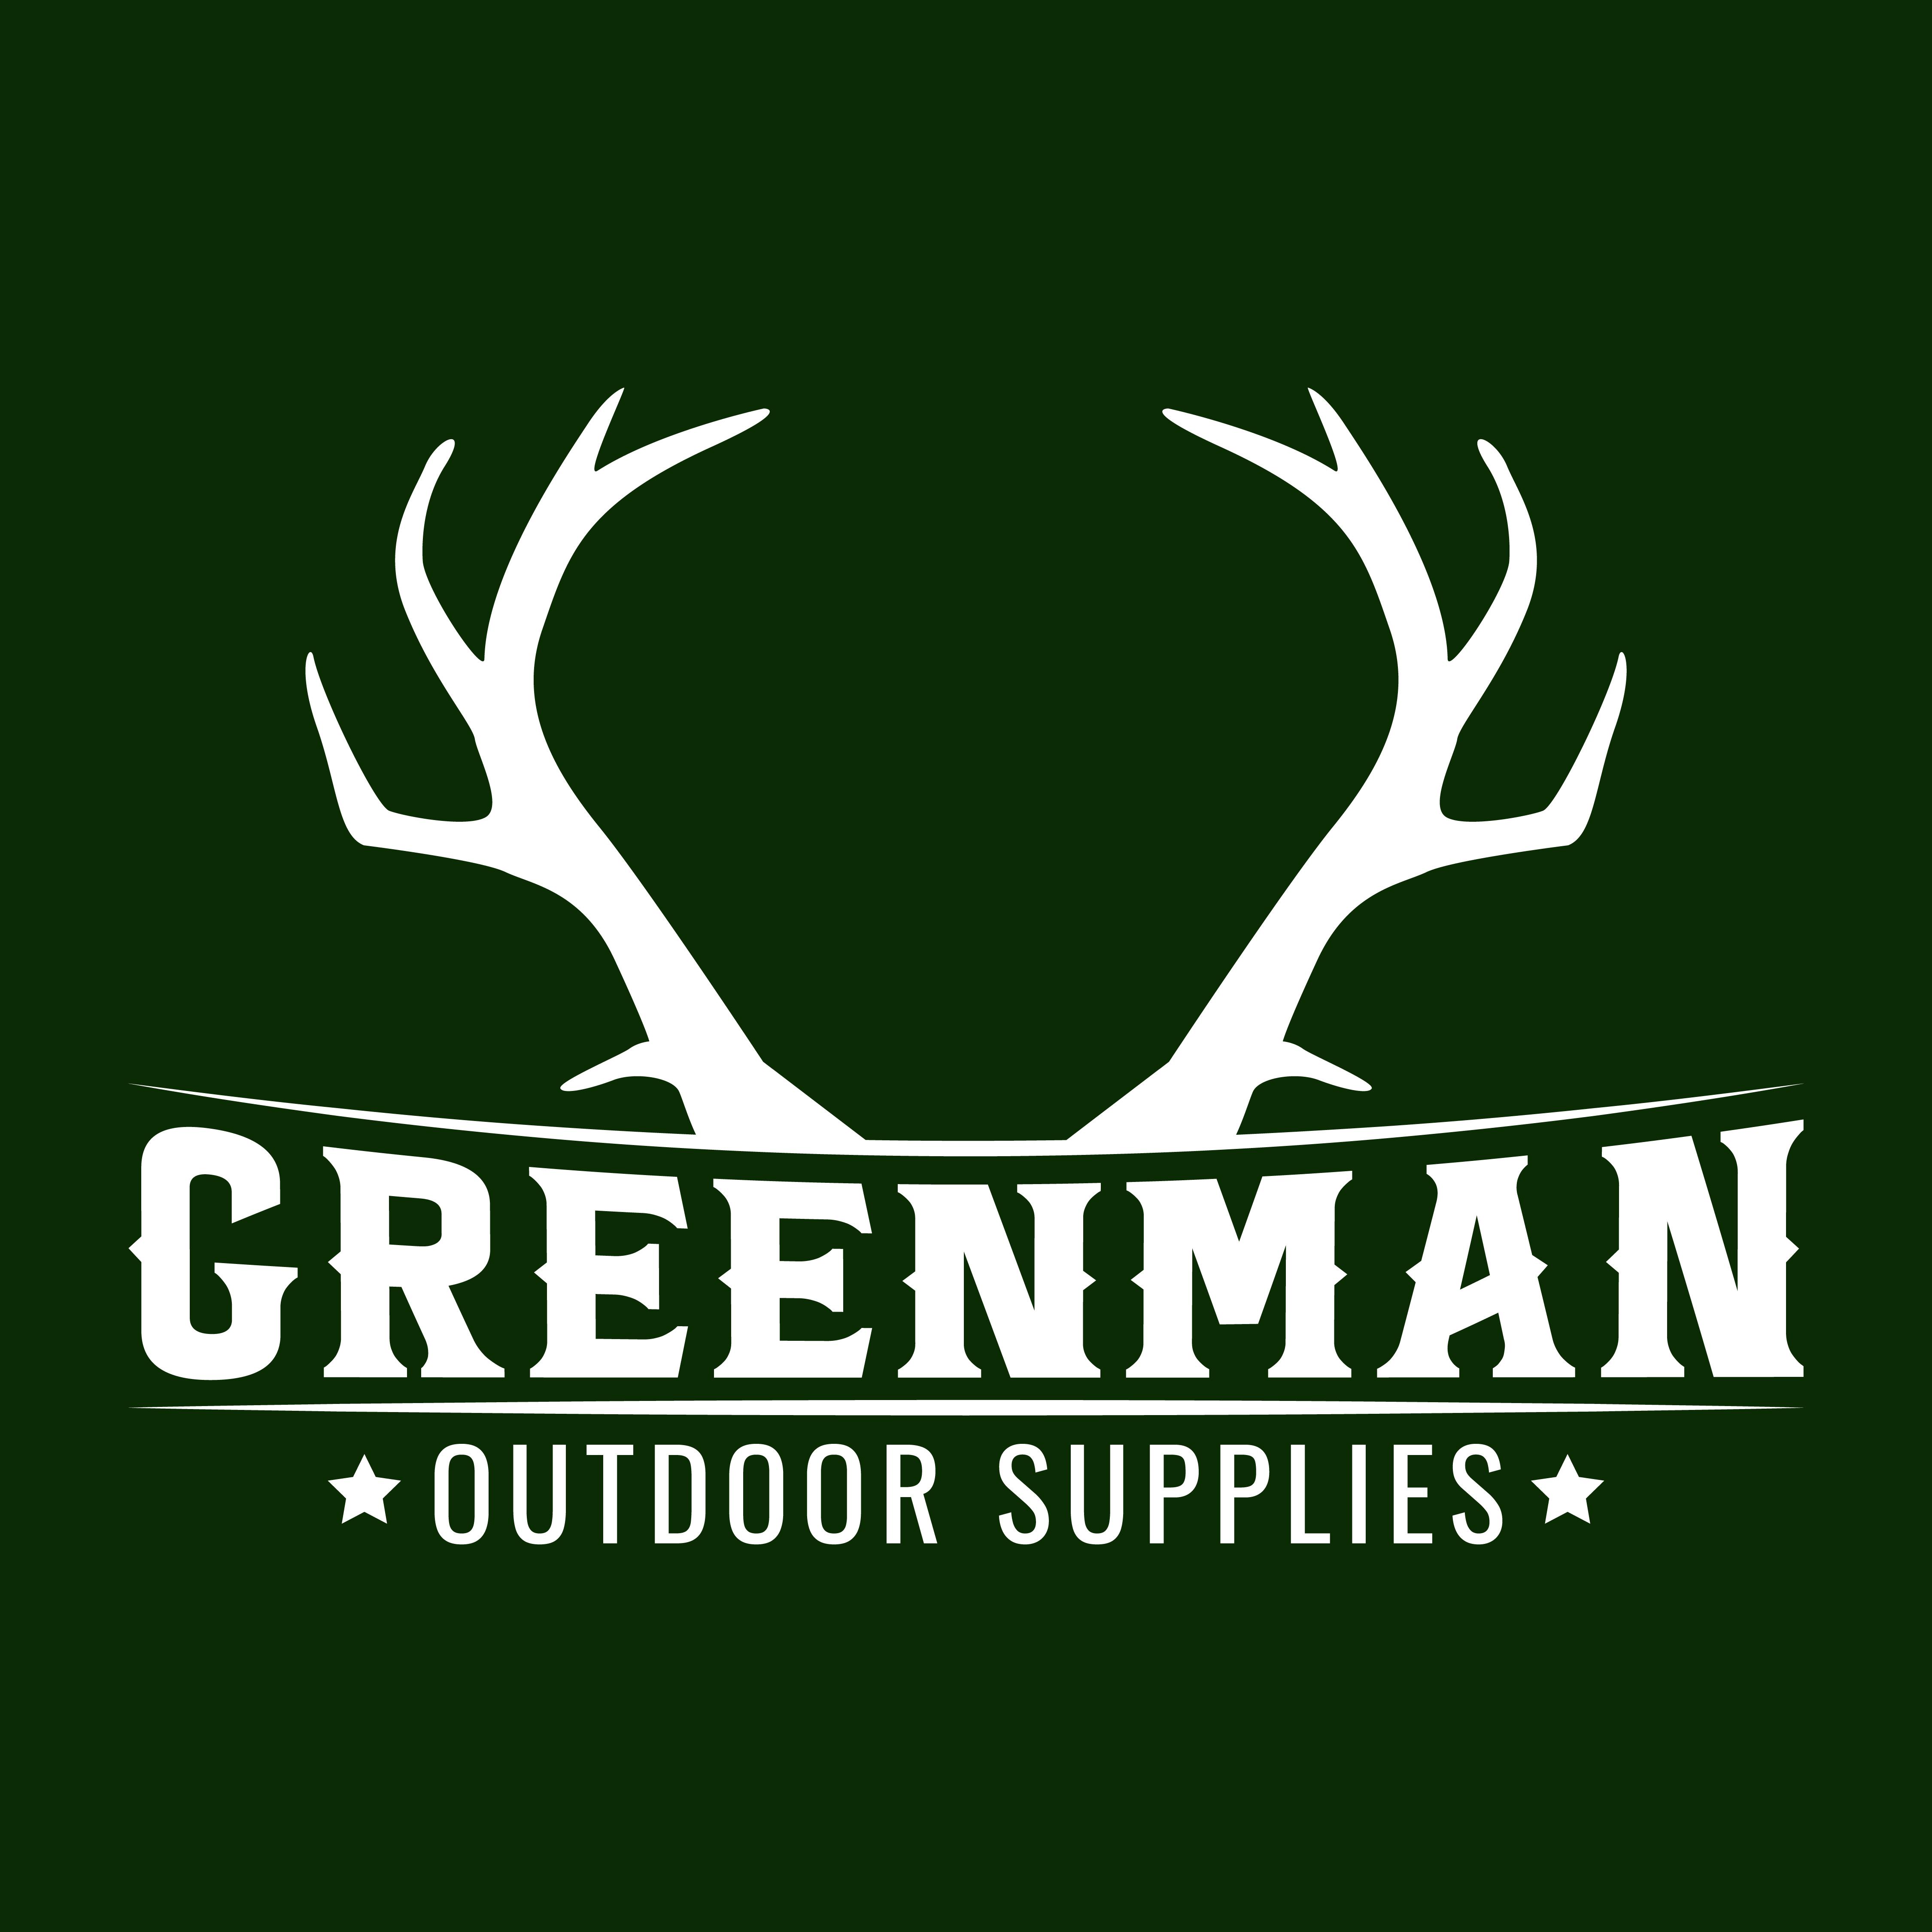 GreenmanOutdoor Supplies